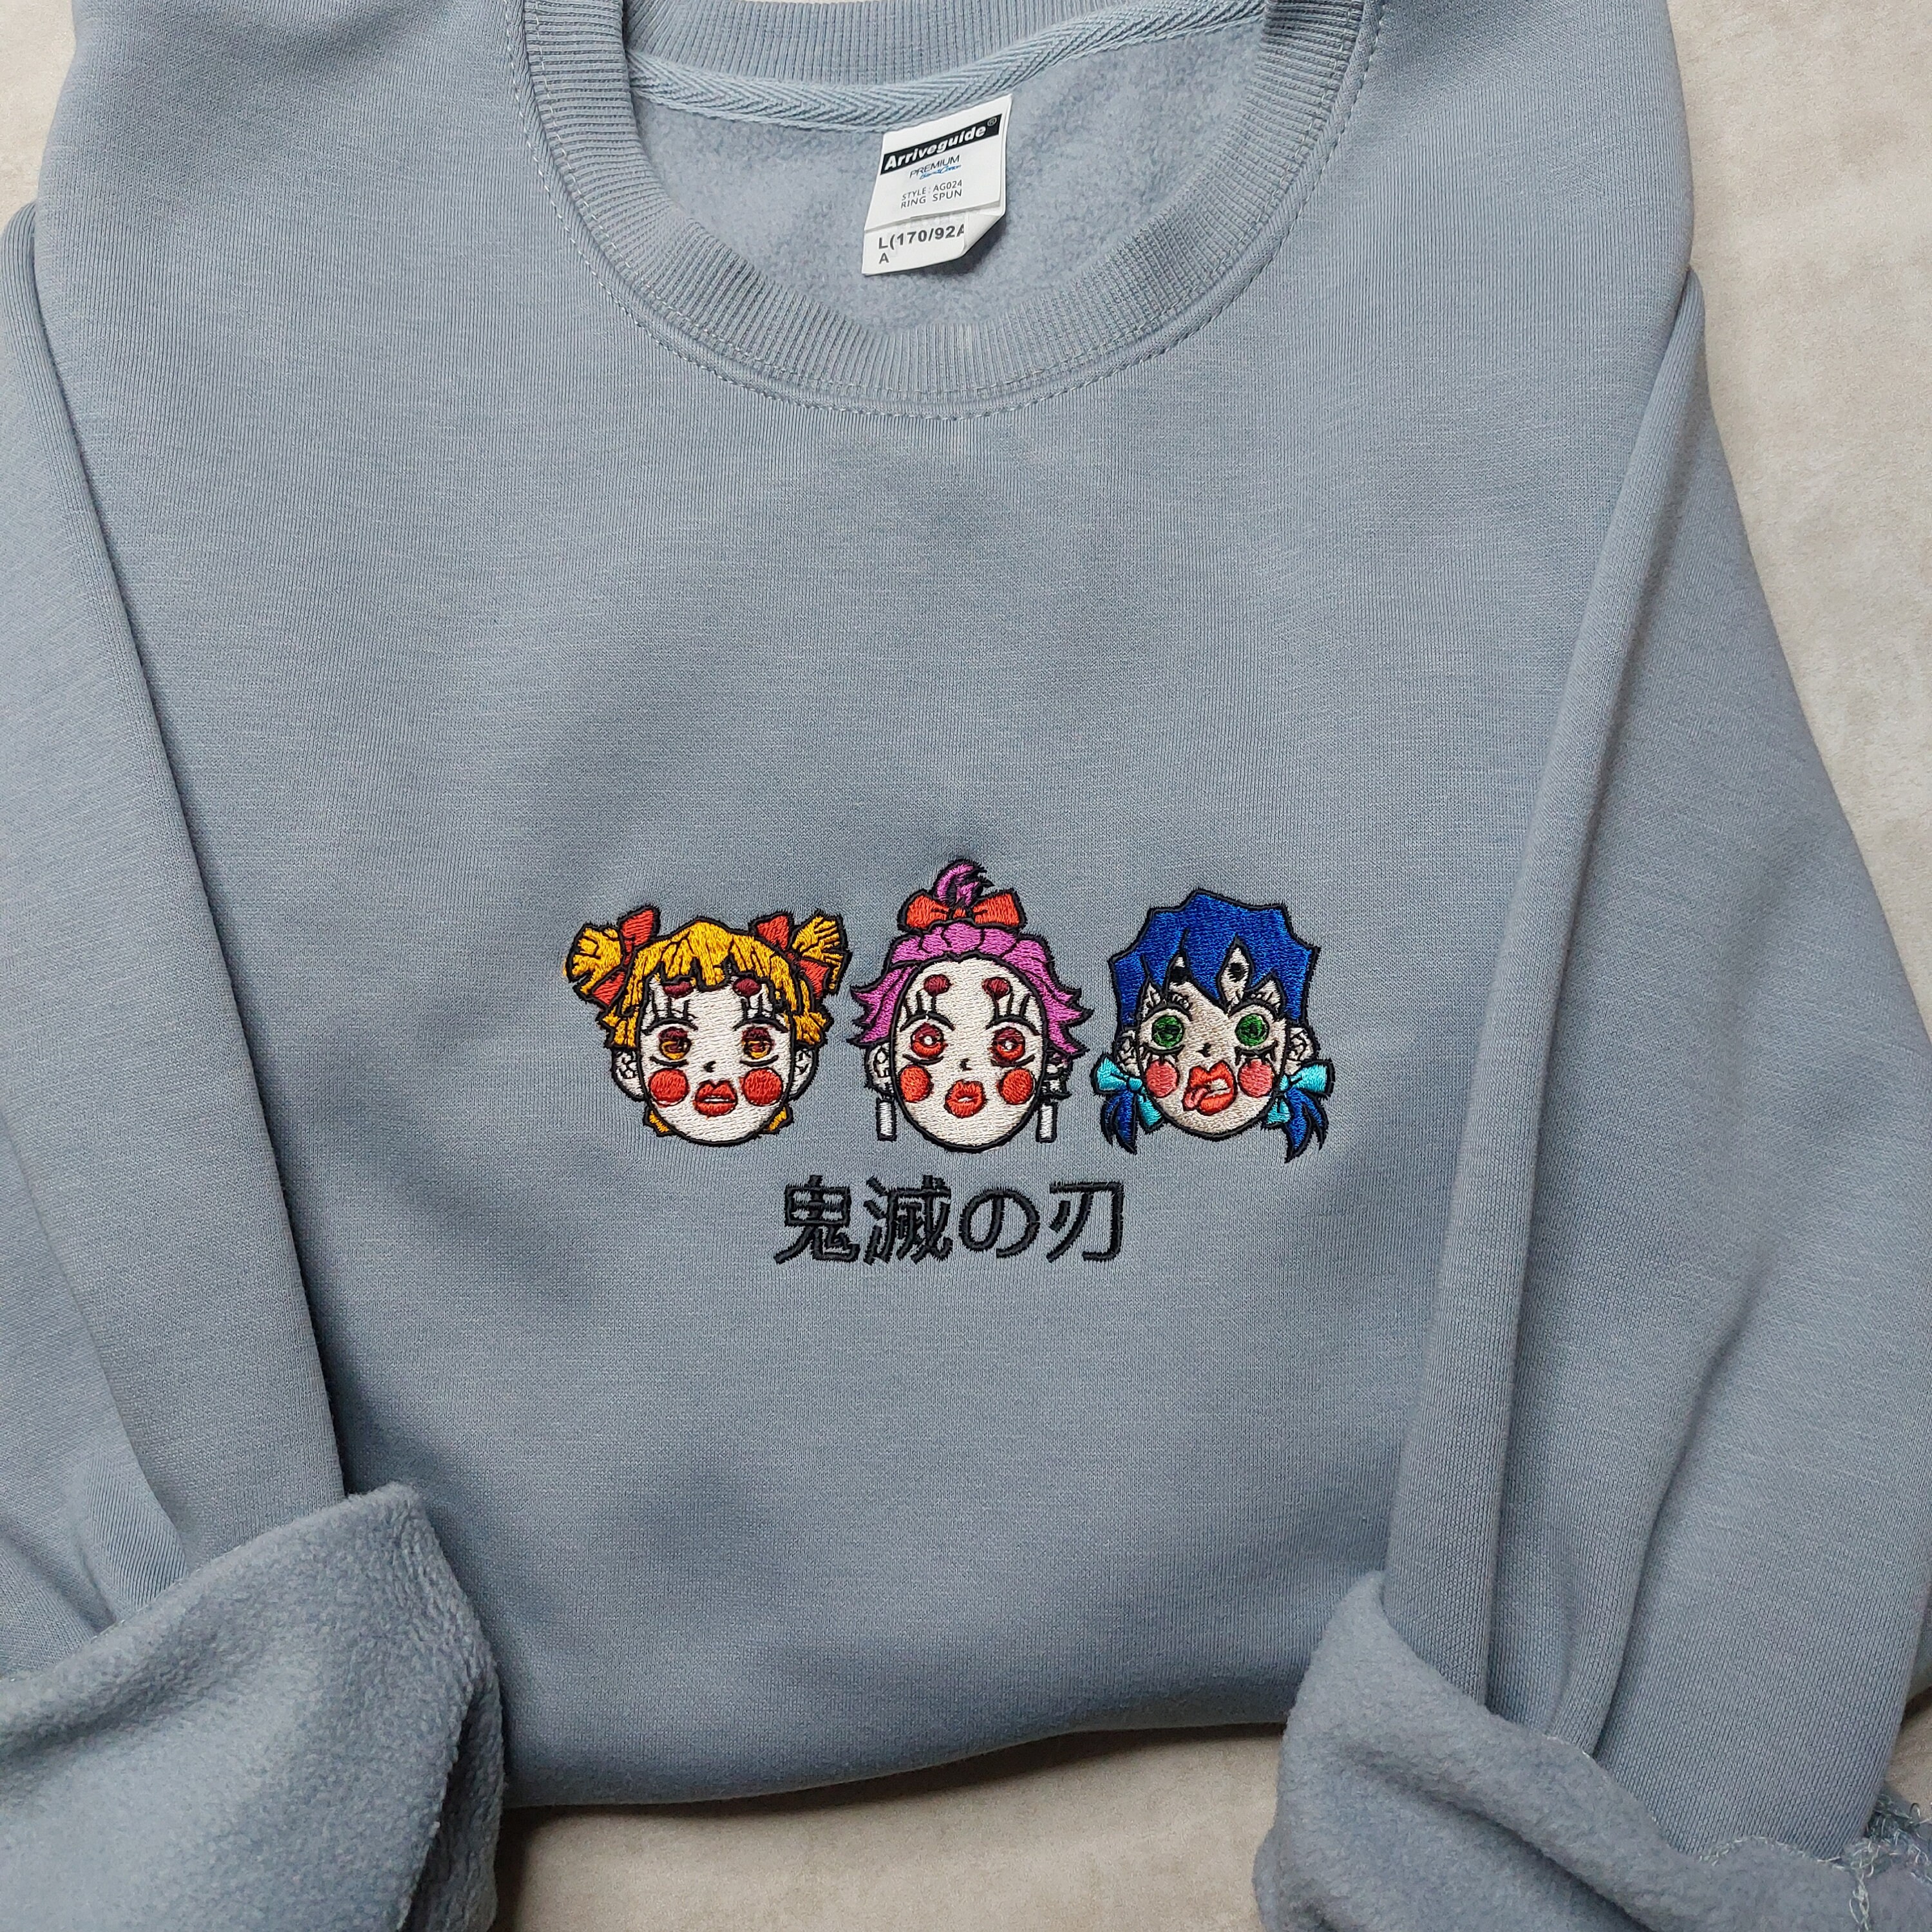 Anime Embroidered Sweatshirt